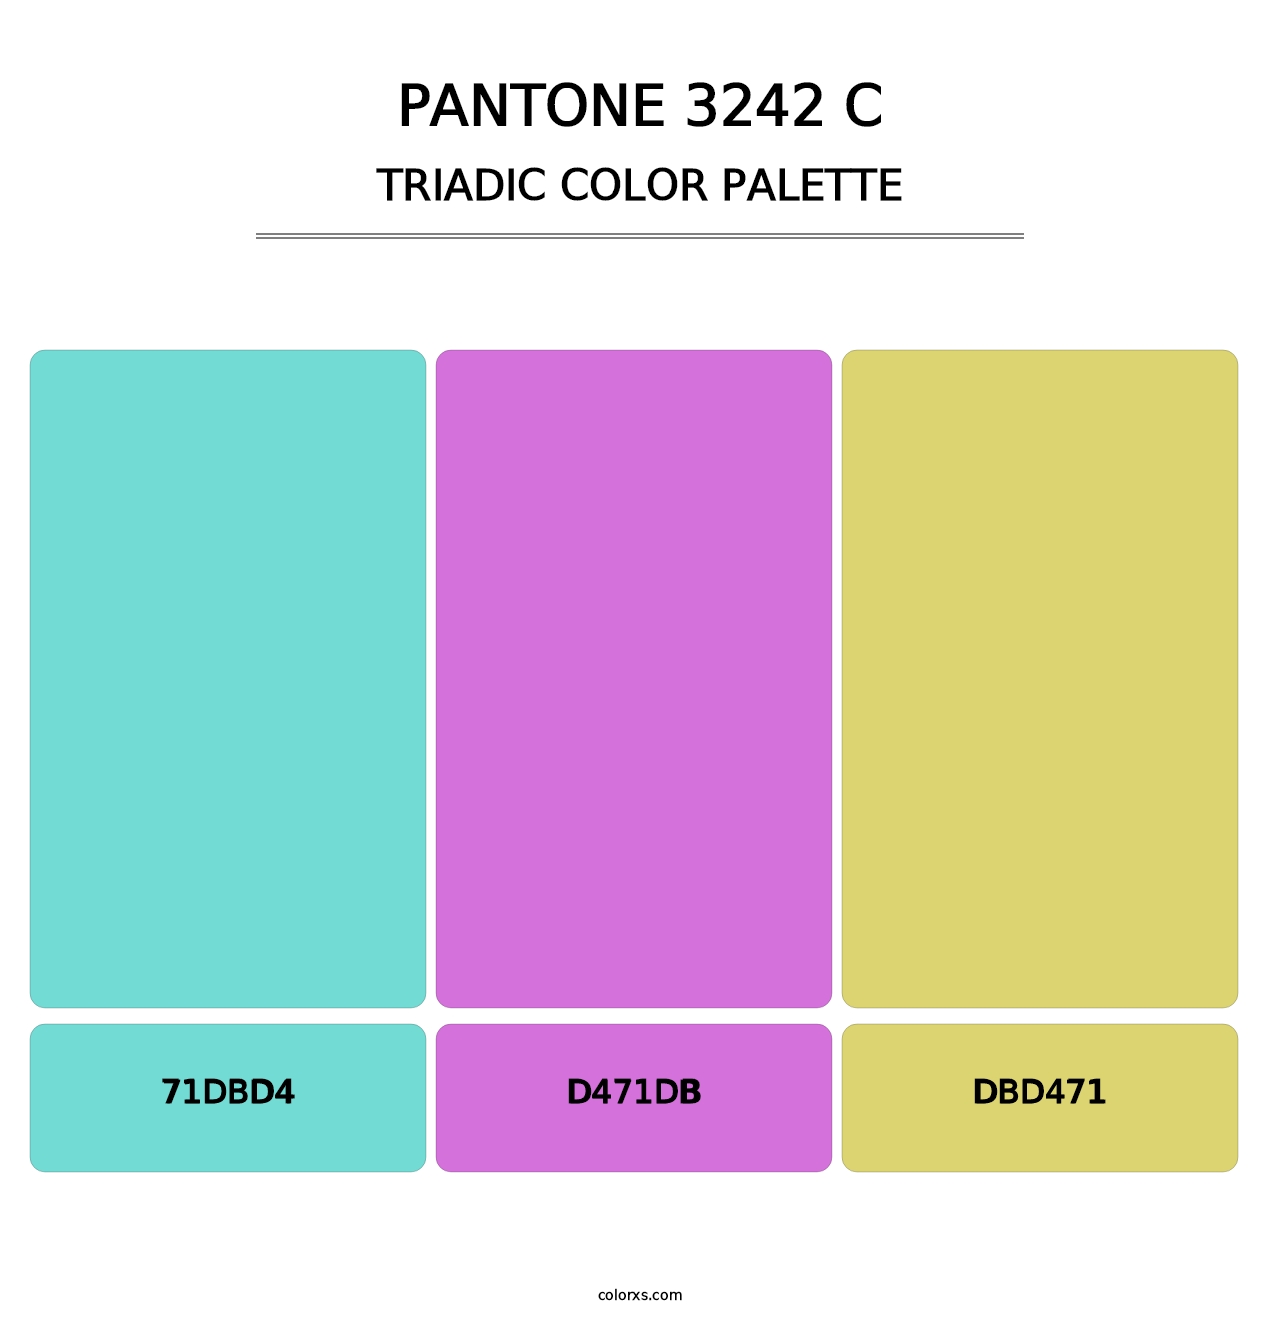 PANTONE 3242 C - Triadic Color Palette